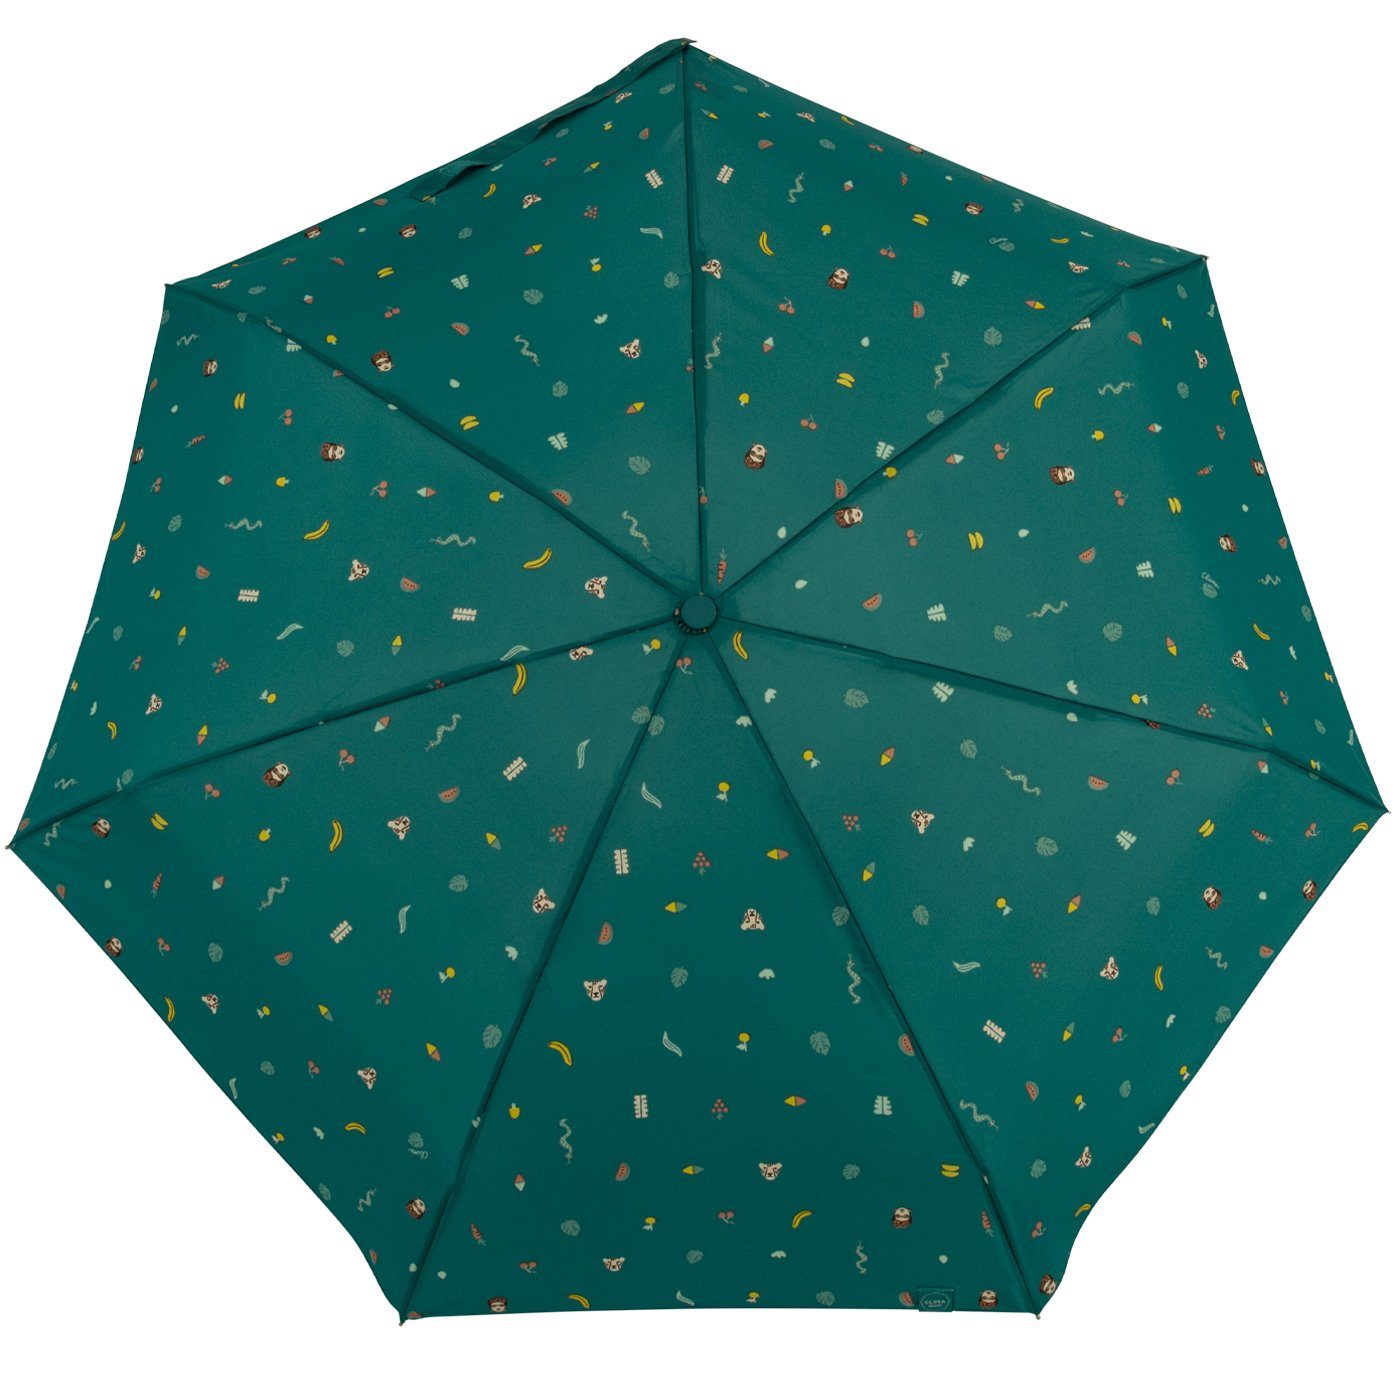 bisetti Taschenregenschirm Damen-Regenschirm, klein, stabil, mit kompakt, mit farbenfroh - Handöffner, türkis Tropen-Dschungel-Motiven